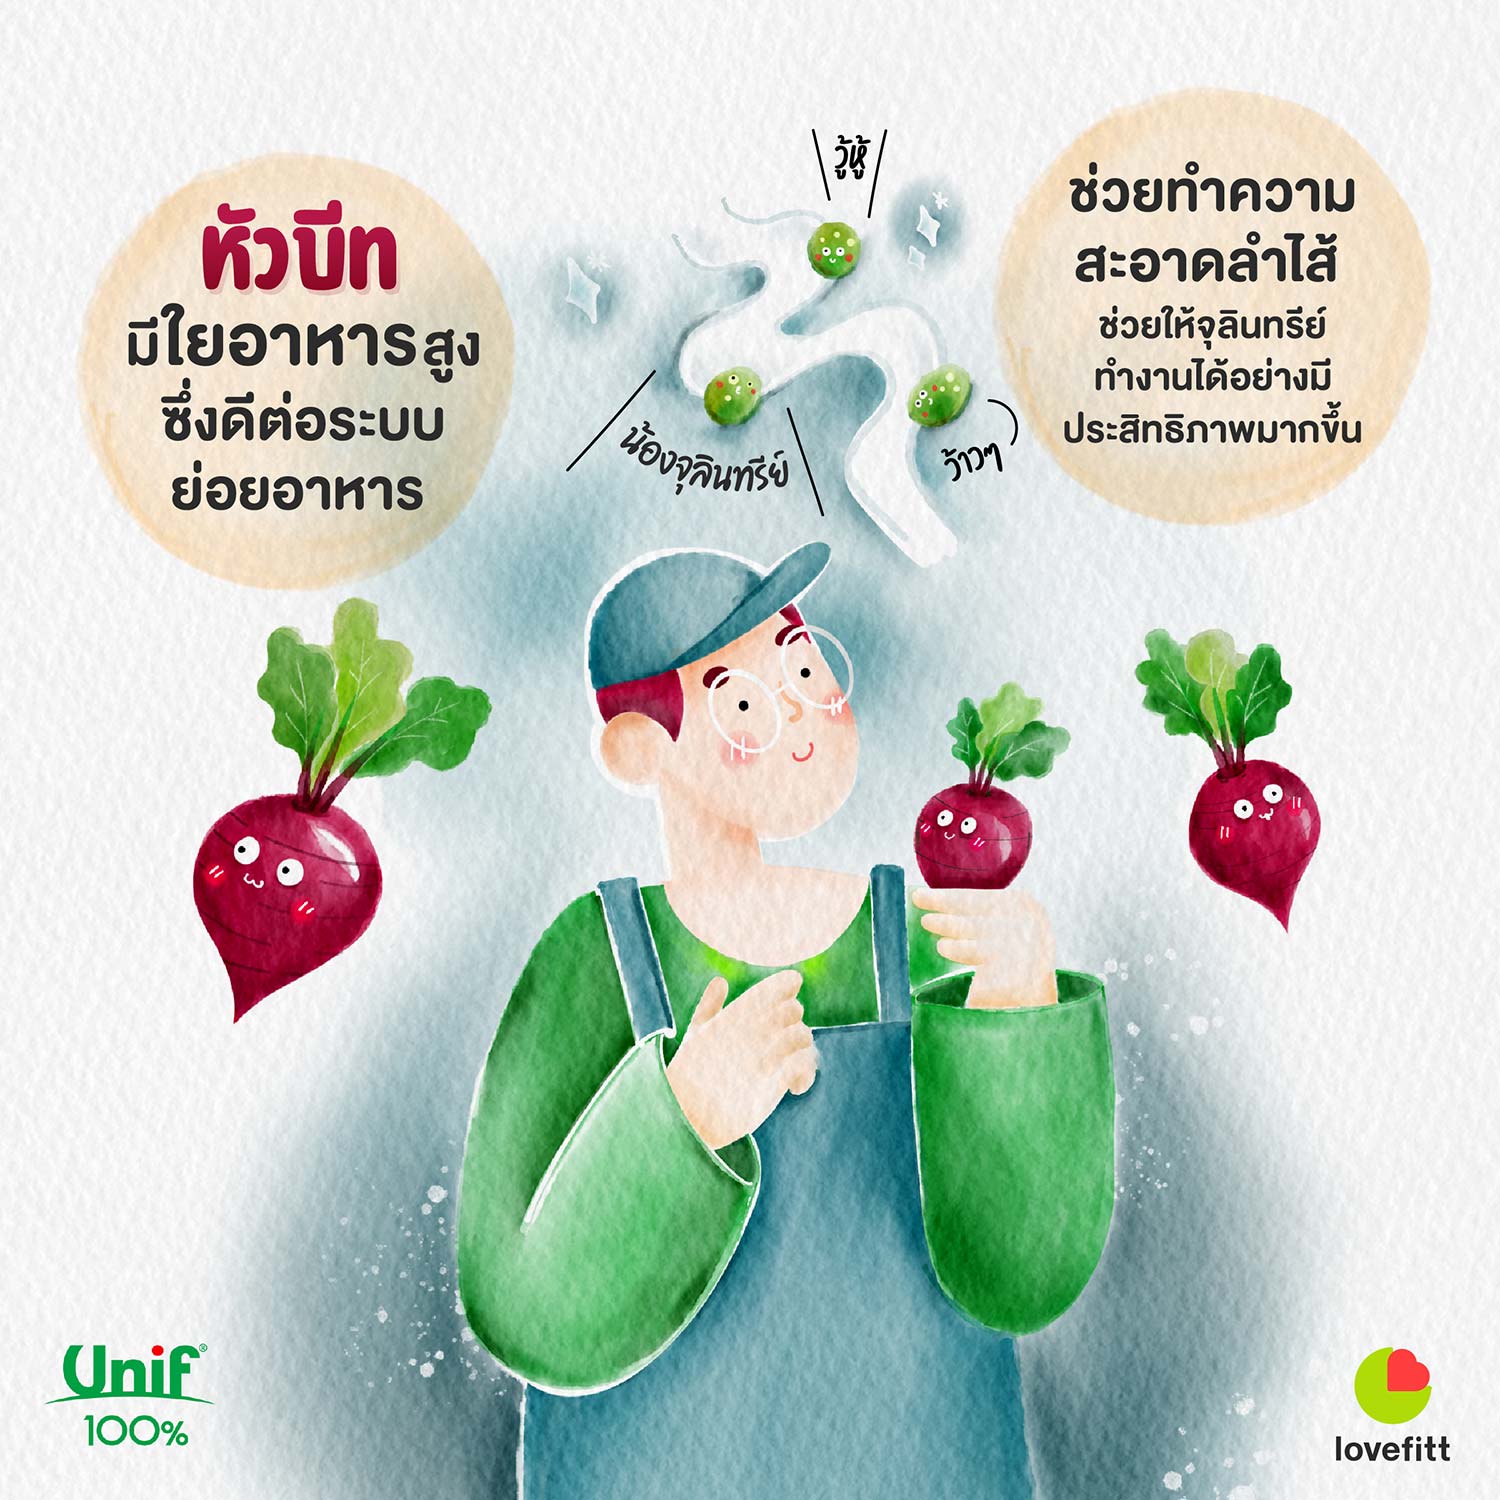 บีทรูท (Beetroot) ในยูนิฟ น้ำผัก ผลไม้รวม 100% มีใยอาหารสูงดีต่อระบบย่อยอาหาร